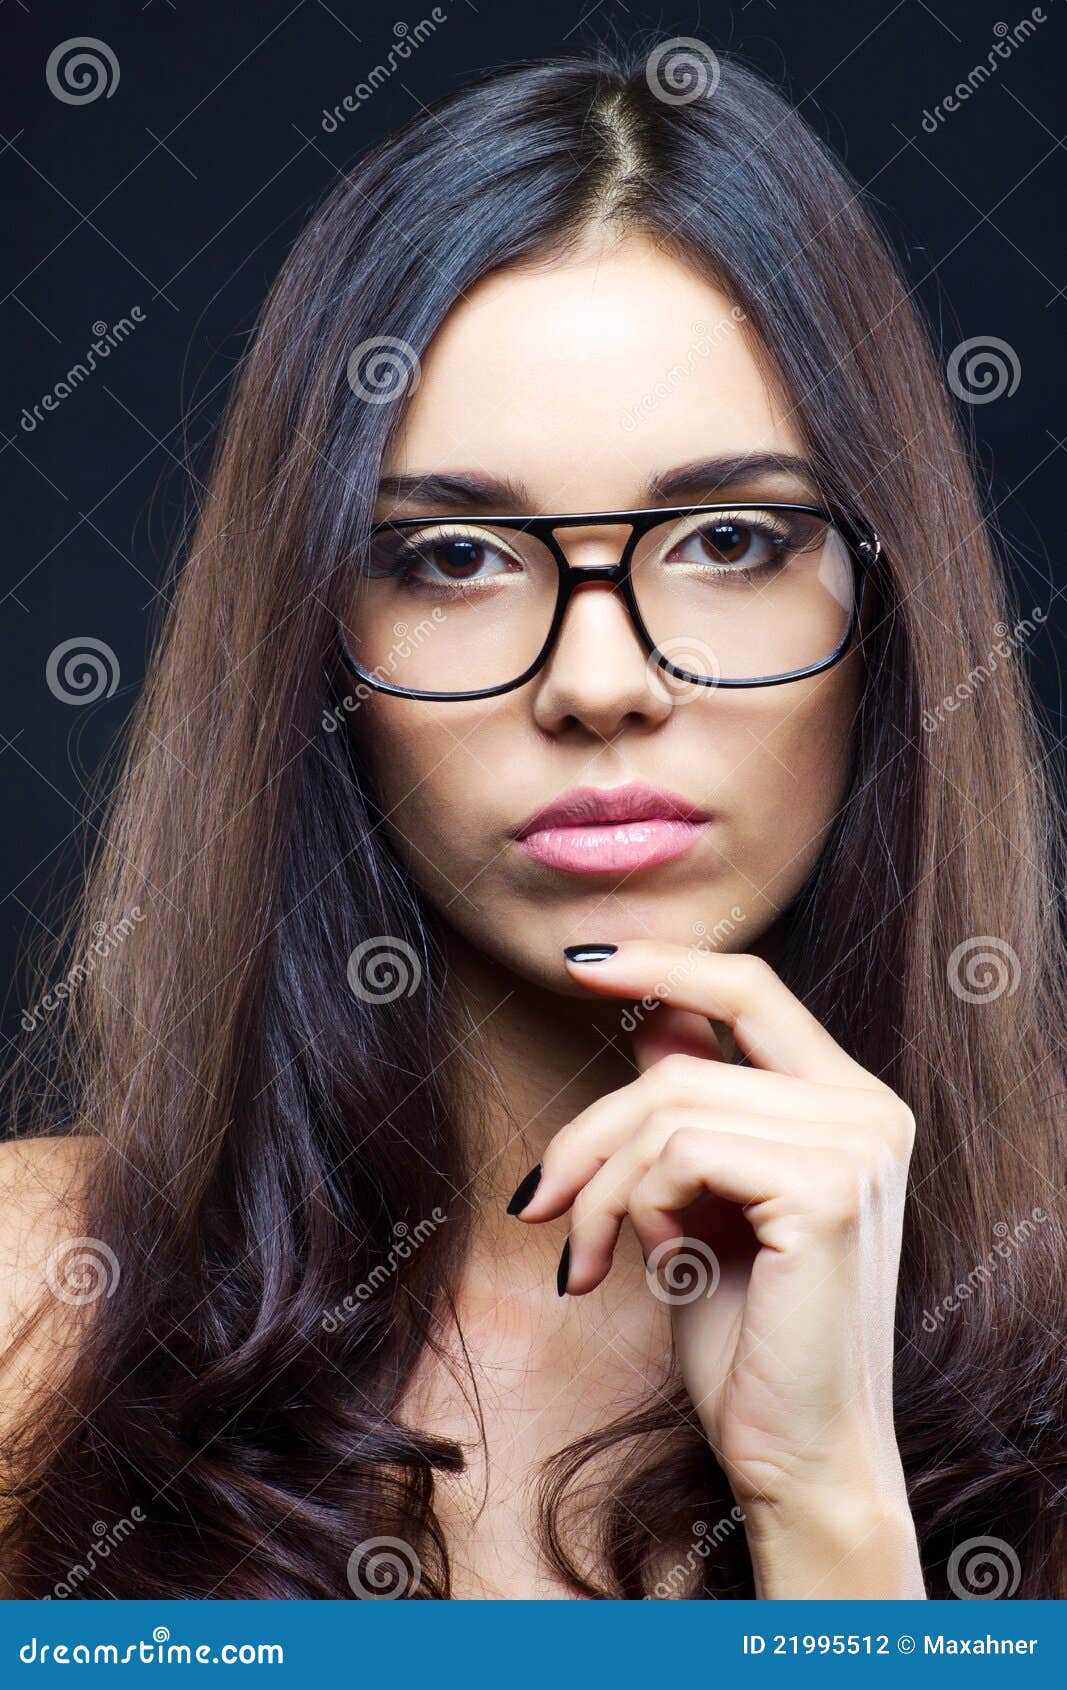 brunette girl wearing glasses